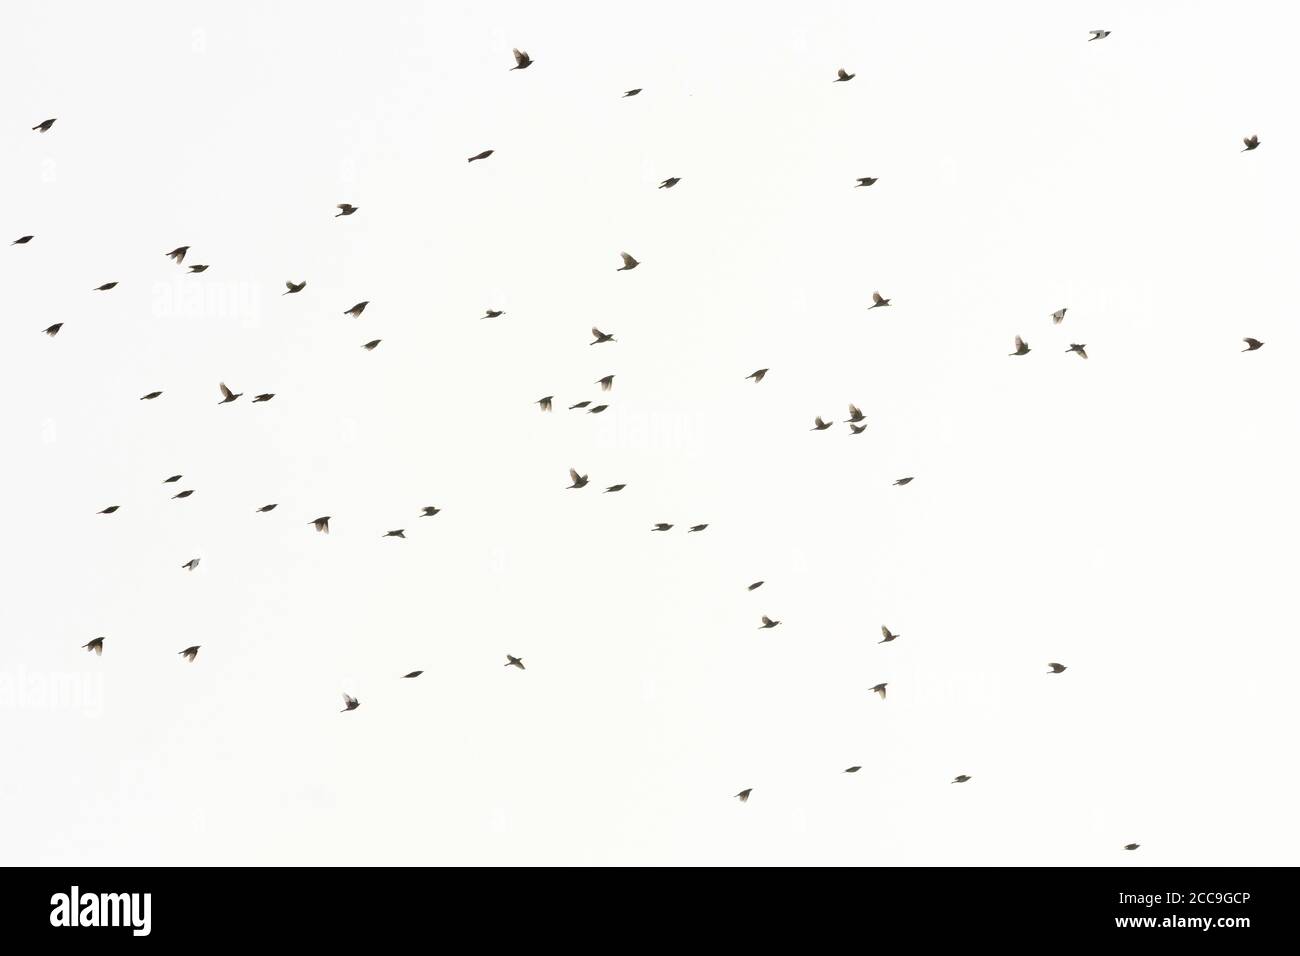 Migrating flock of Redwings (Turdus iliacus) flying overhead over Tongplaat near Dordrecht in the Netherlands. Stock Photo